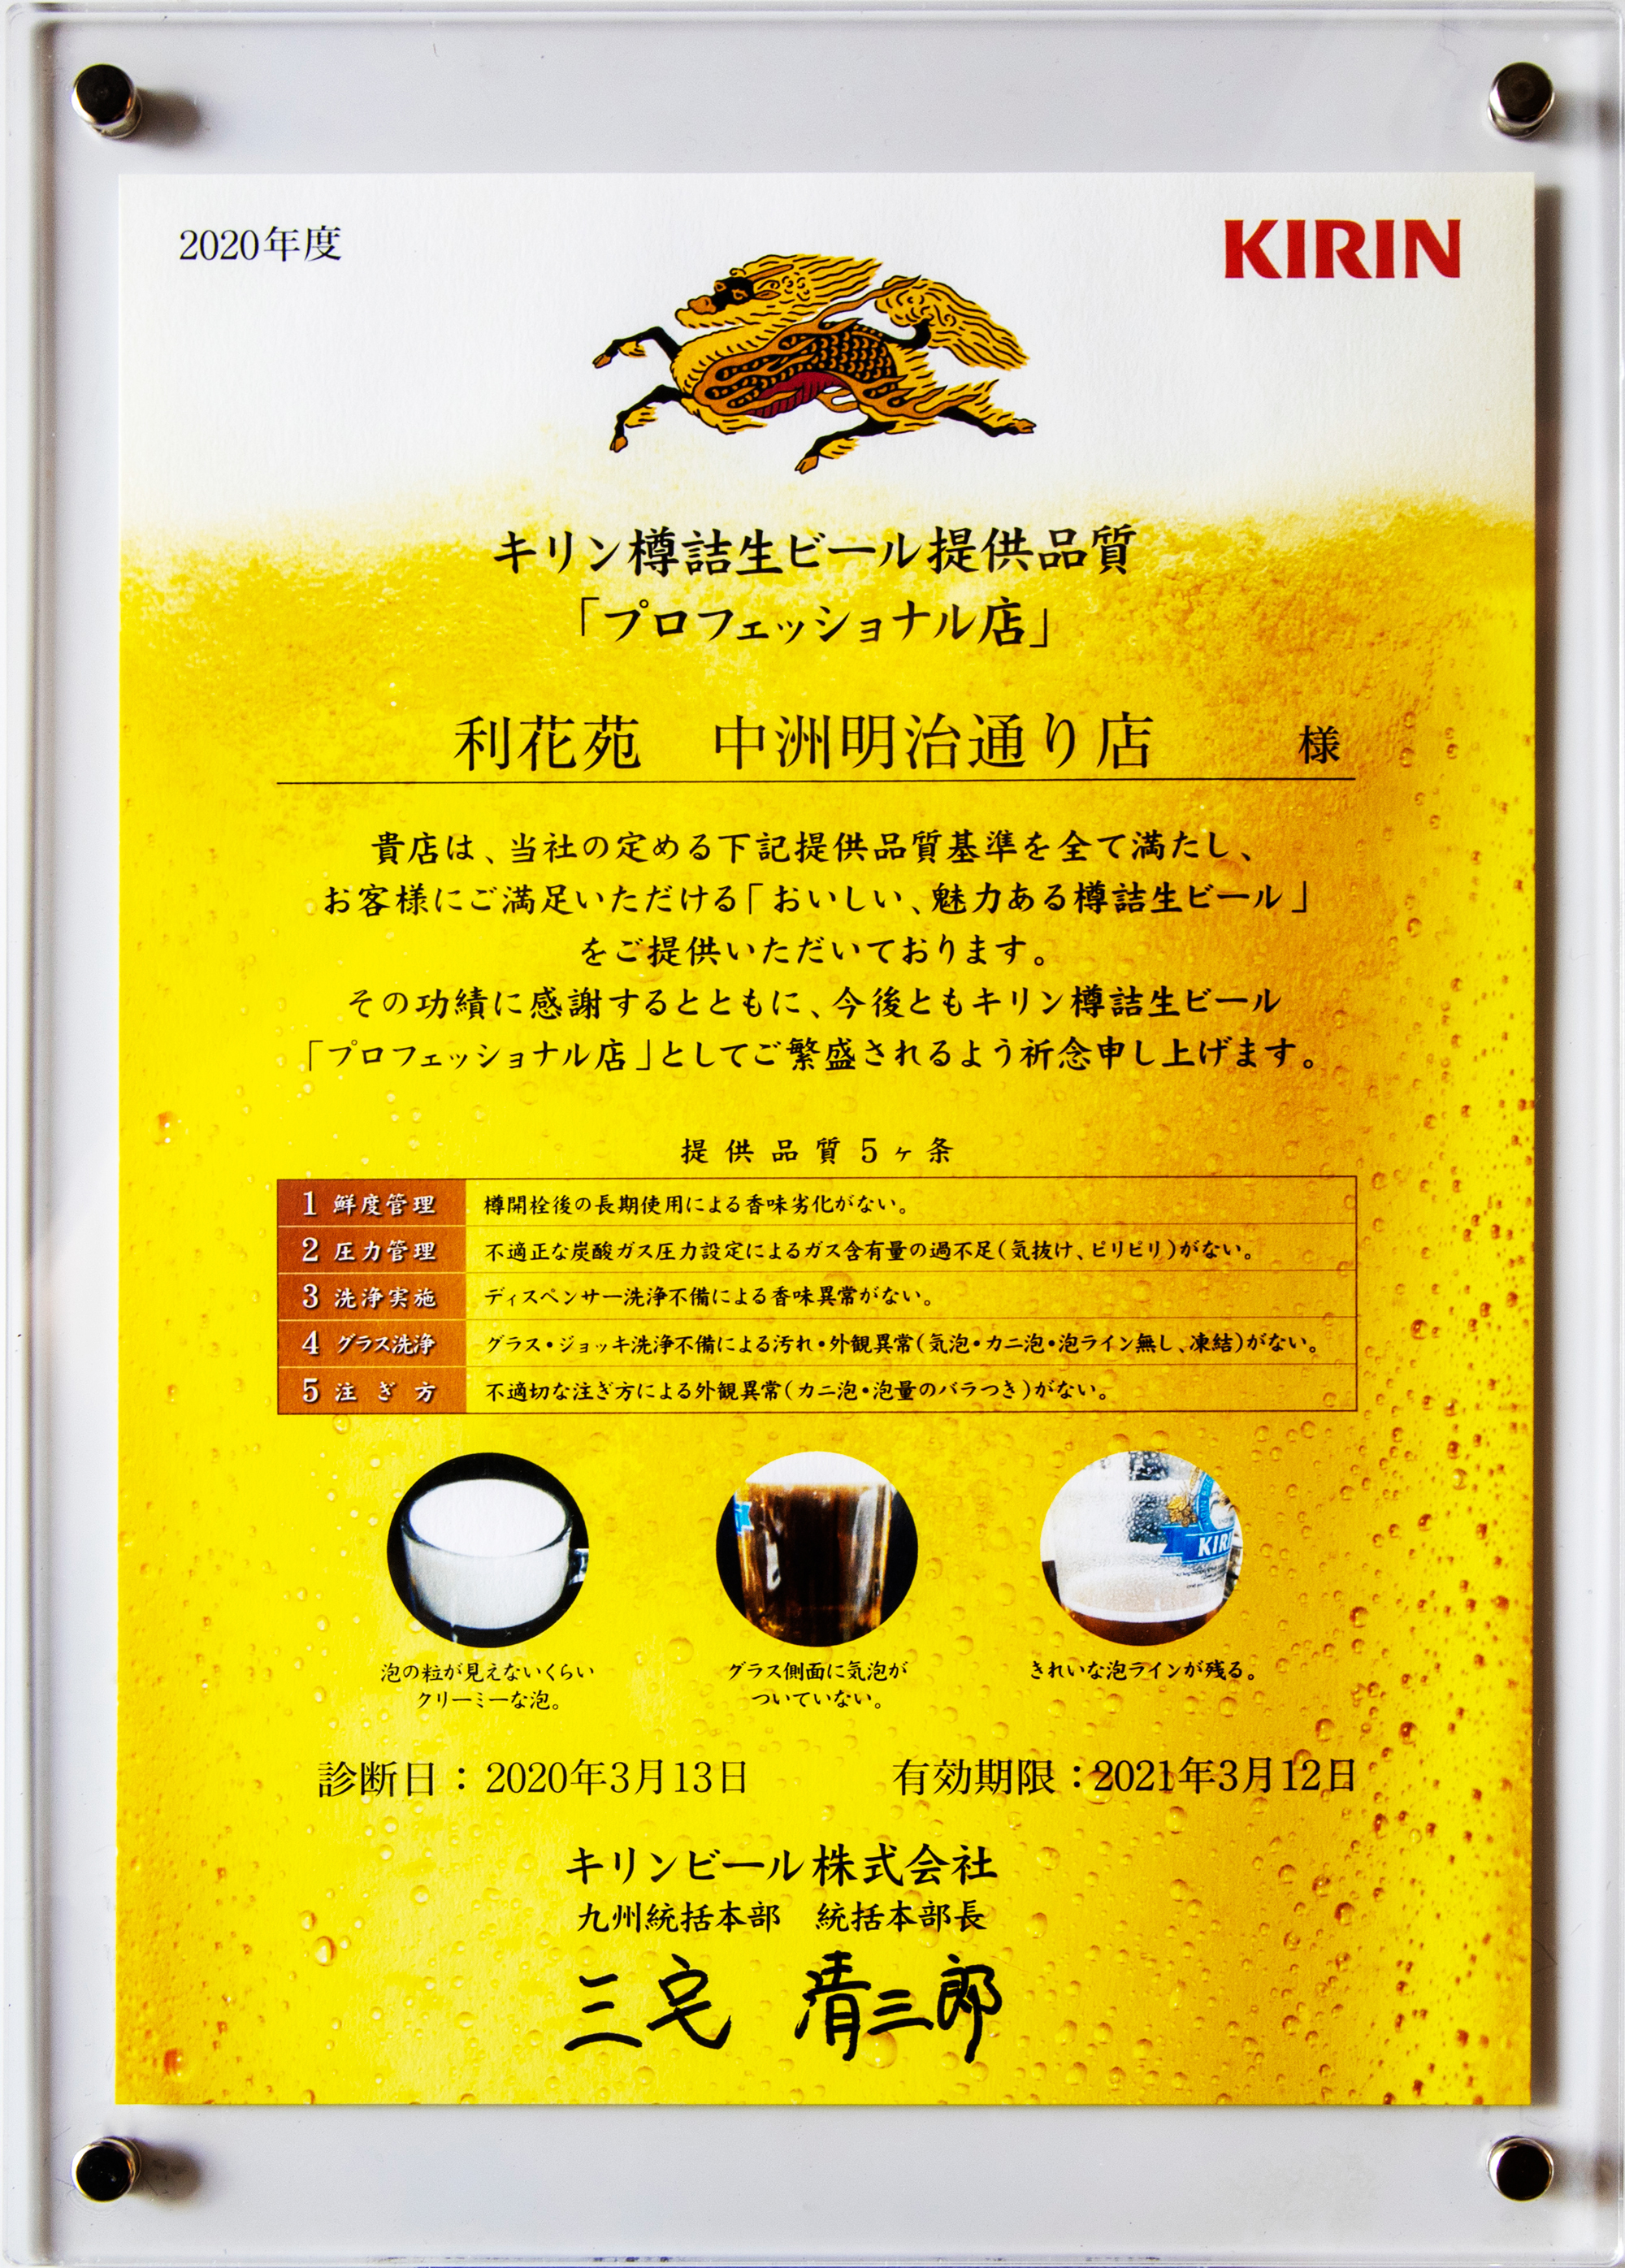 キリン樽詰生ビール提供品質「プロフェッショナル 店」